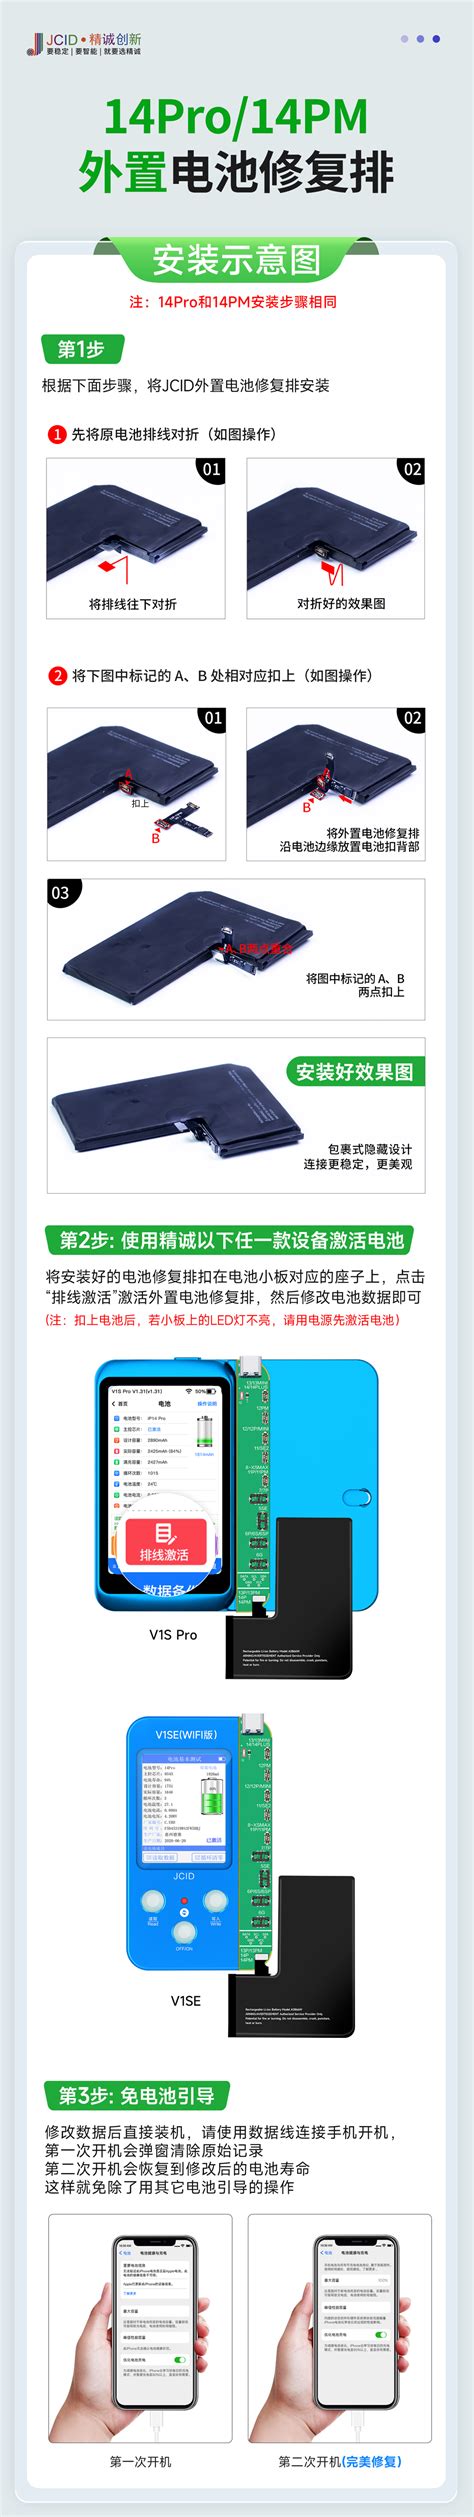 Edirol PCR-M80 MIDI键盘评测_乐城仕-中国录音棚系统集成商